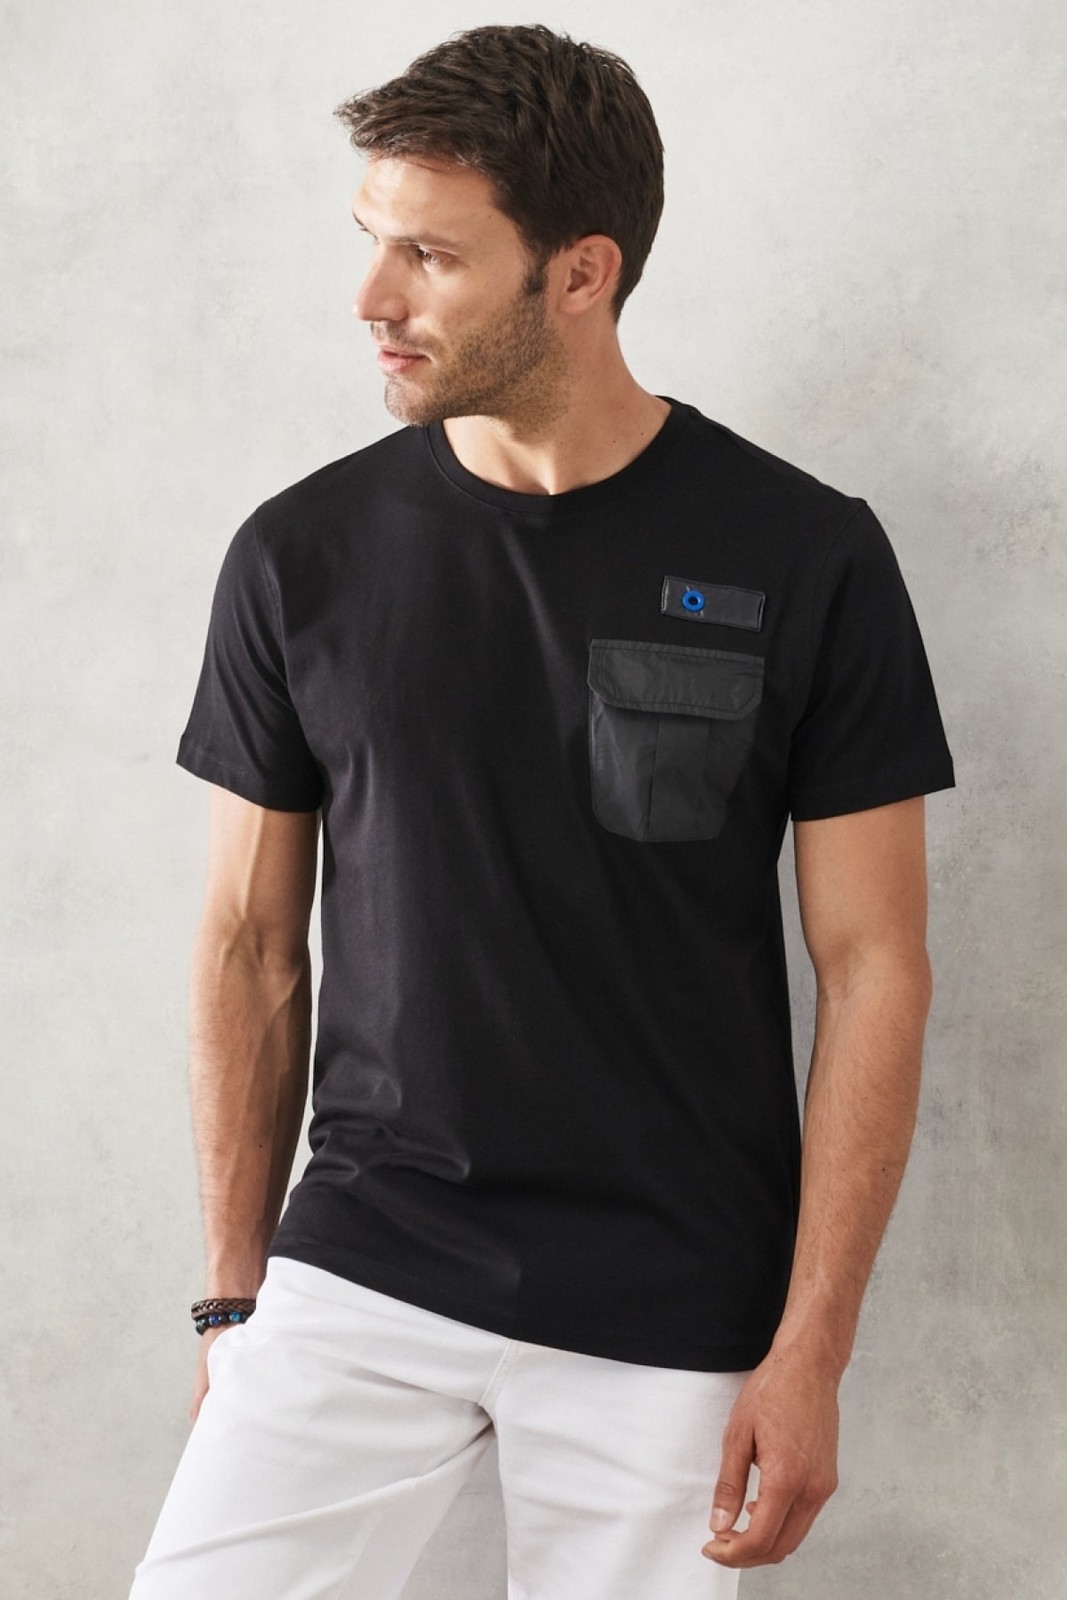 ALTINYILDIZ CLASSICS Men's Black Slim Fit Narrow Cut 100% Cotton Crew Neck T-Shirt